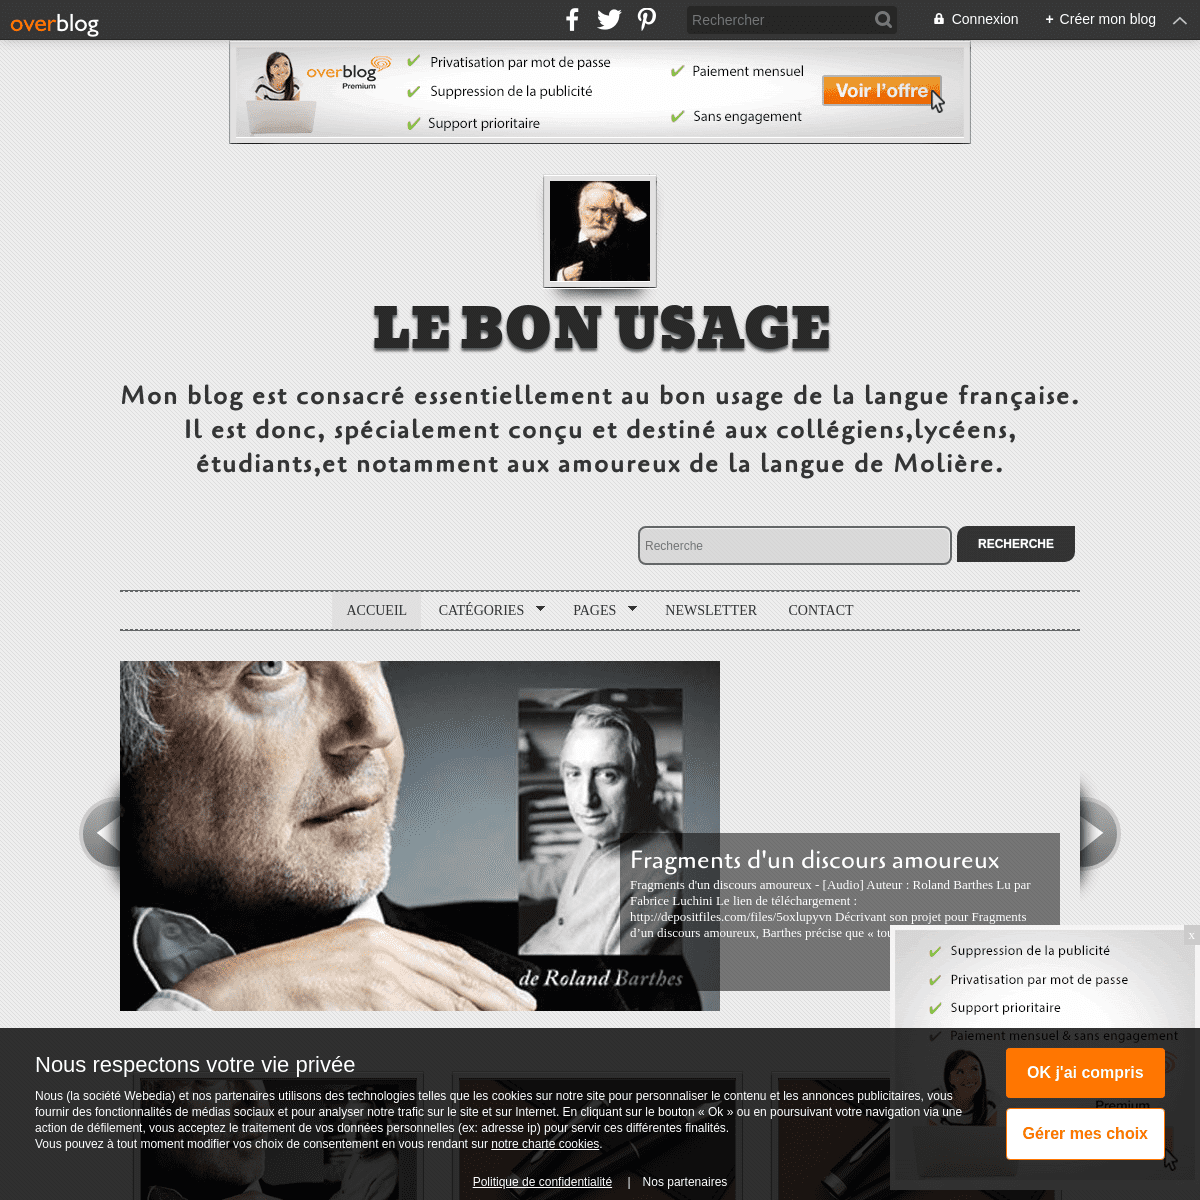 A complete backup of lebonusage.over-blog.com